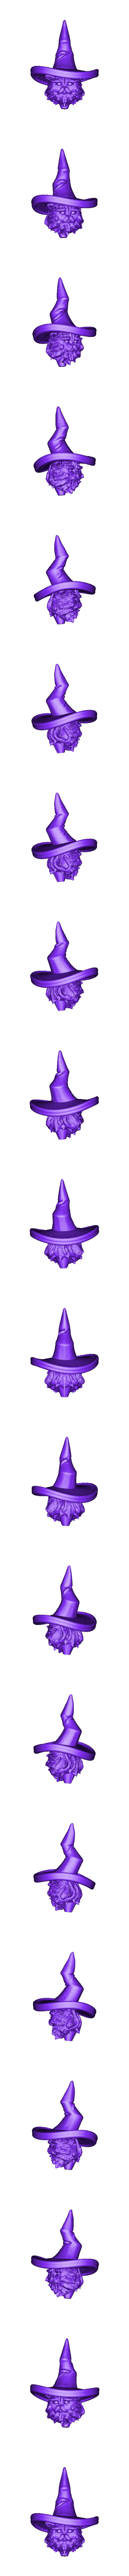 Head.OBJ Télécharger fichier OBJ Chat magicien • Objet pour imprimante 3D, Darius_Shem